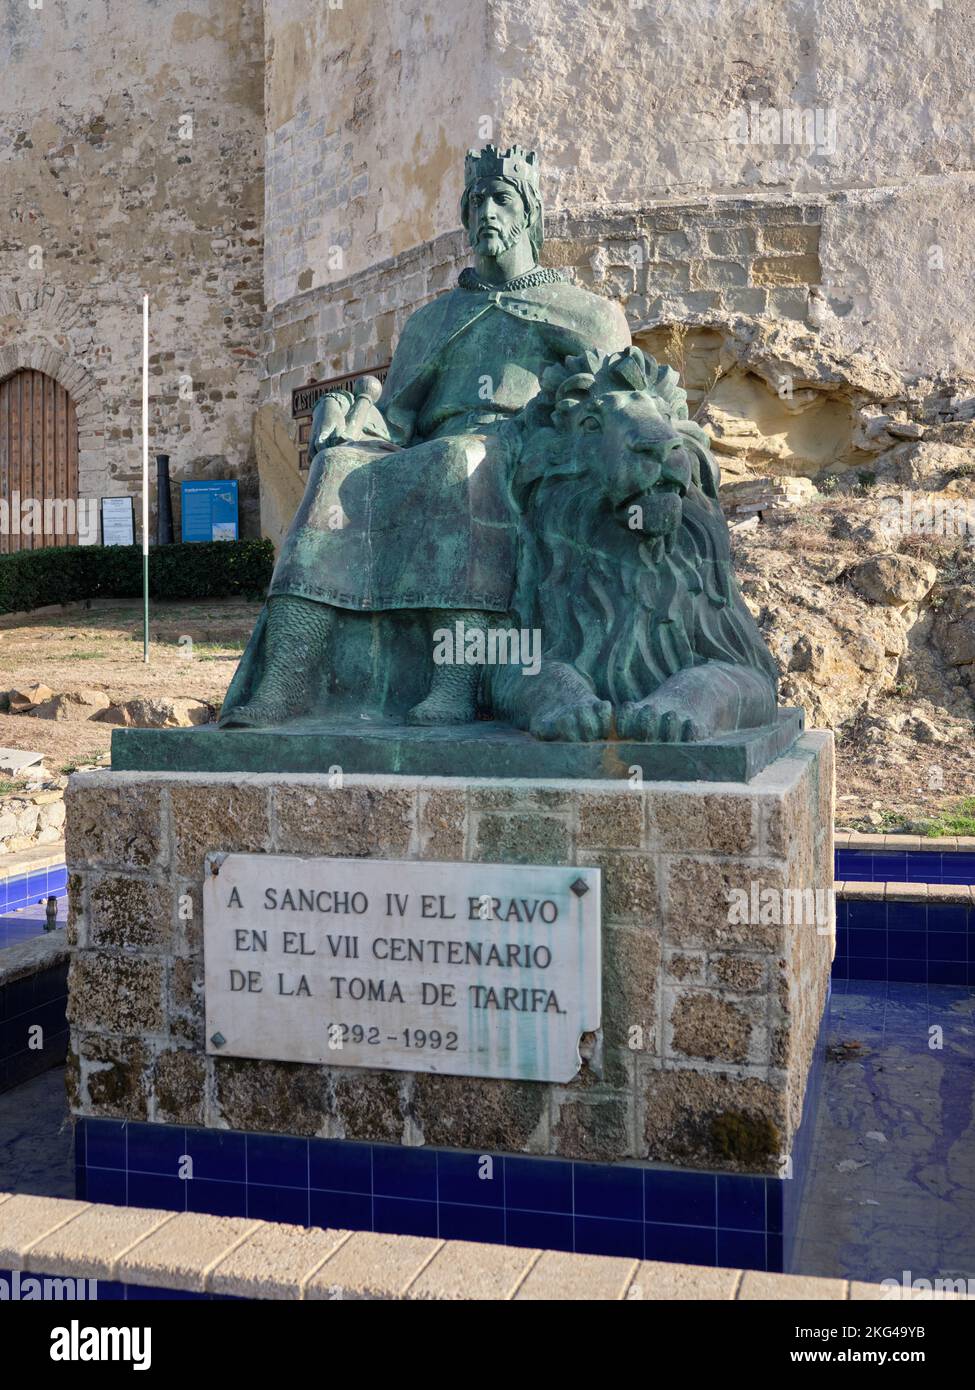 Monument of Sancho IV El Bravo in Tarifa, Cádiz, Spain. Stock Photo